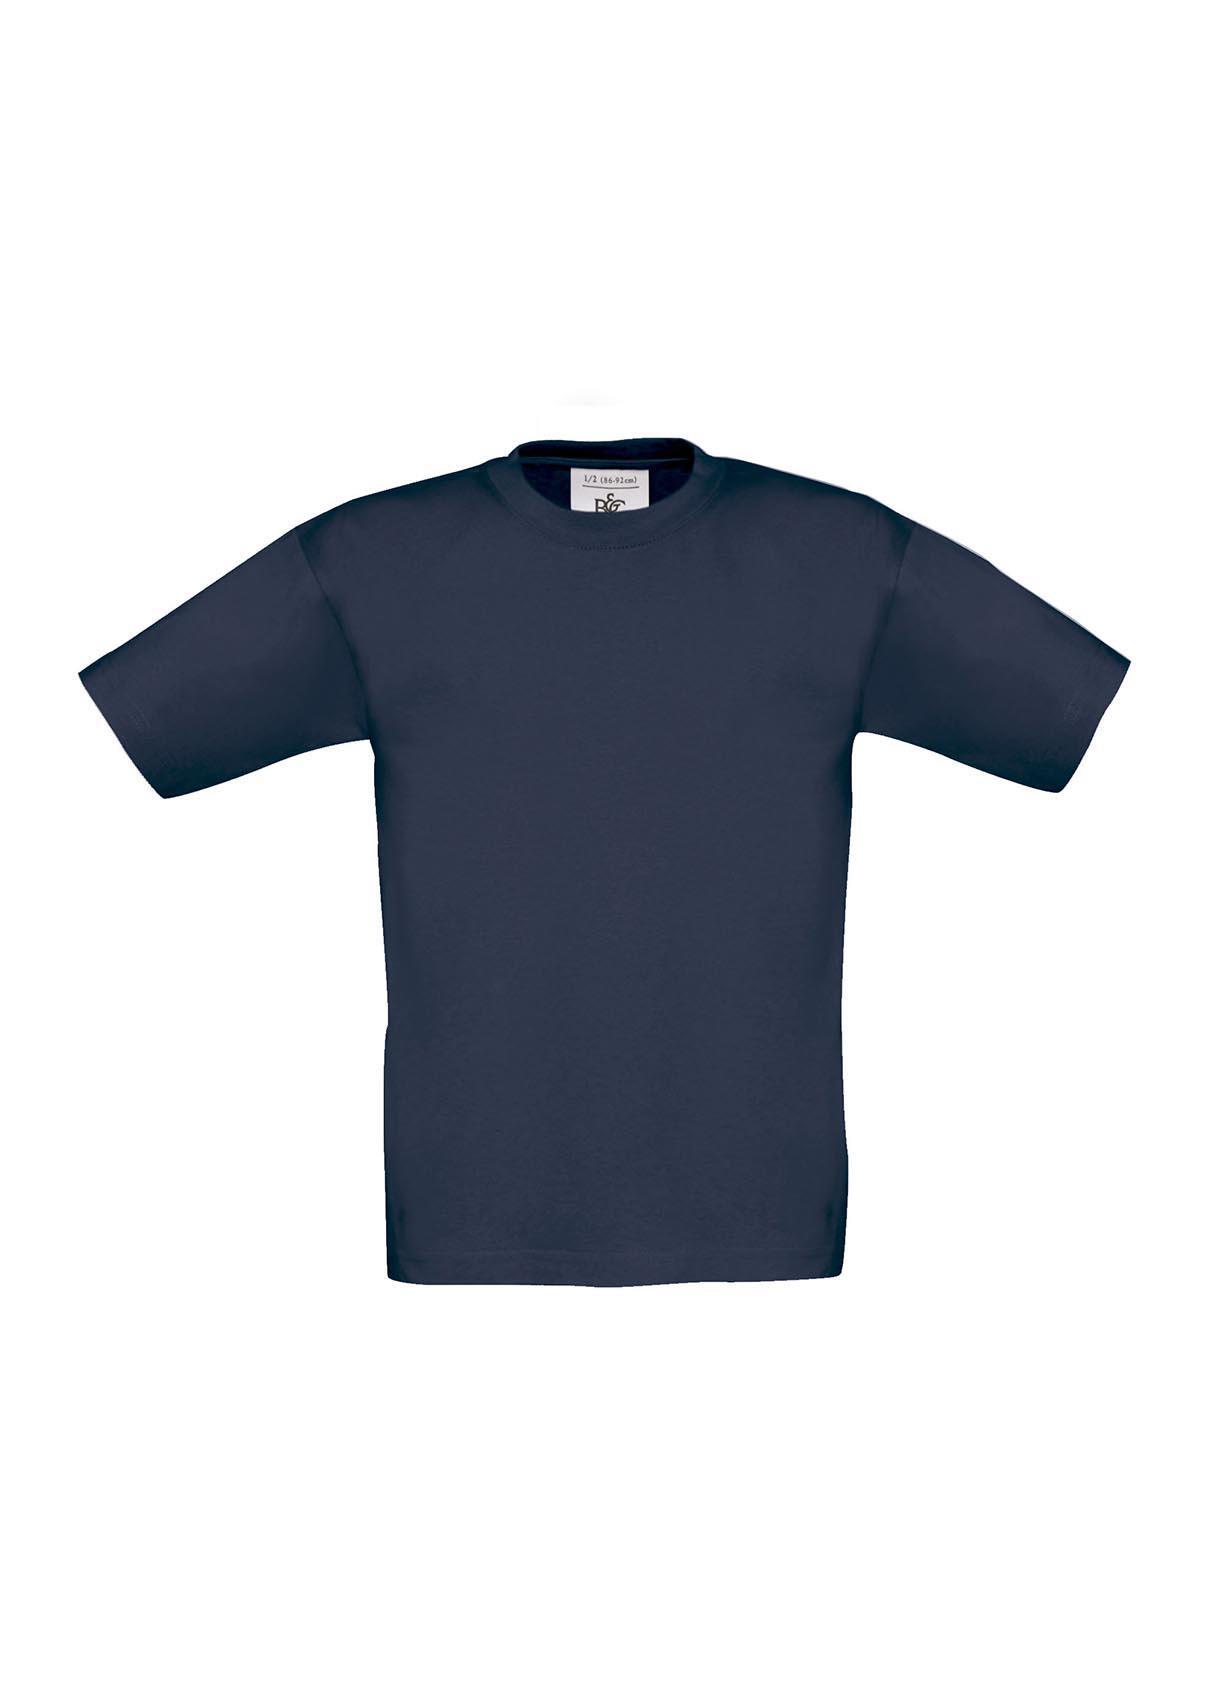 T-shirt voor kids donkerblauw kinder shirt